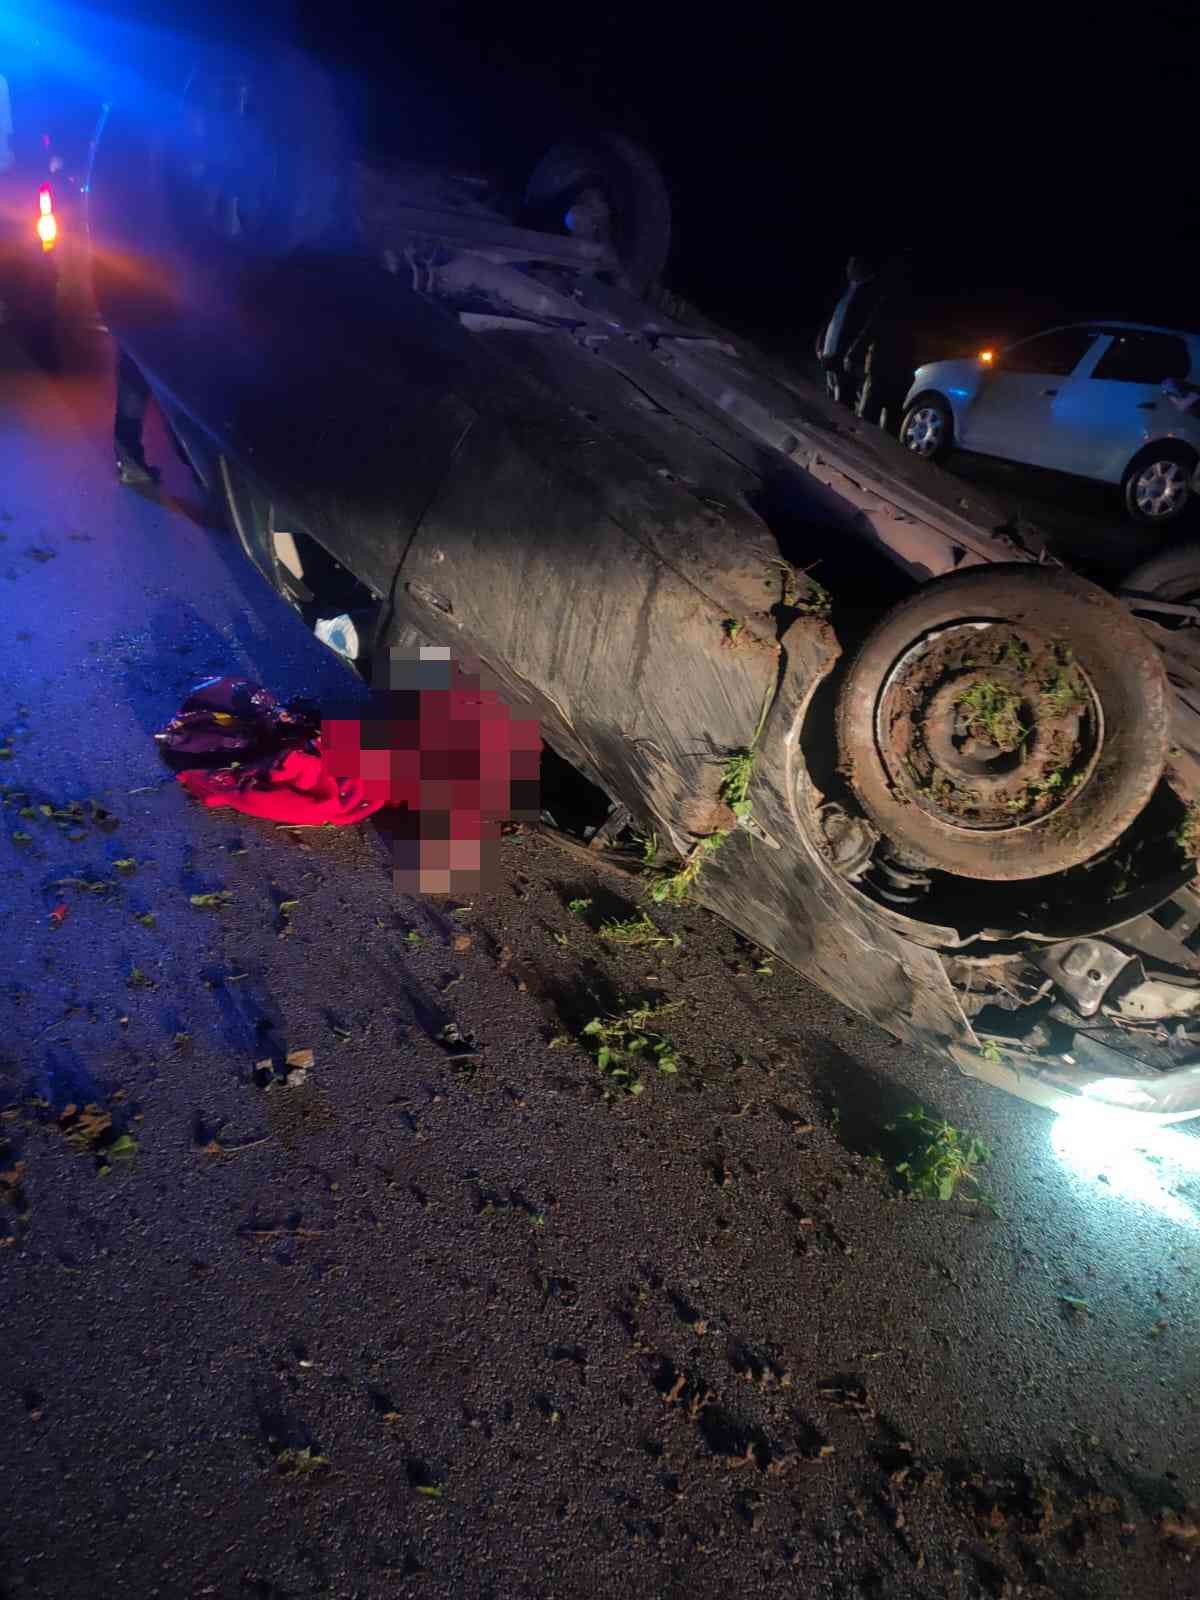 Bandırma’da trafik kazası: 1 ölü, 1 yaralı #balikesir